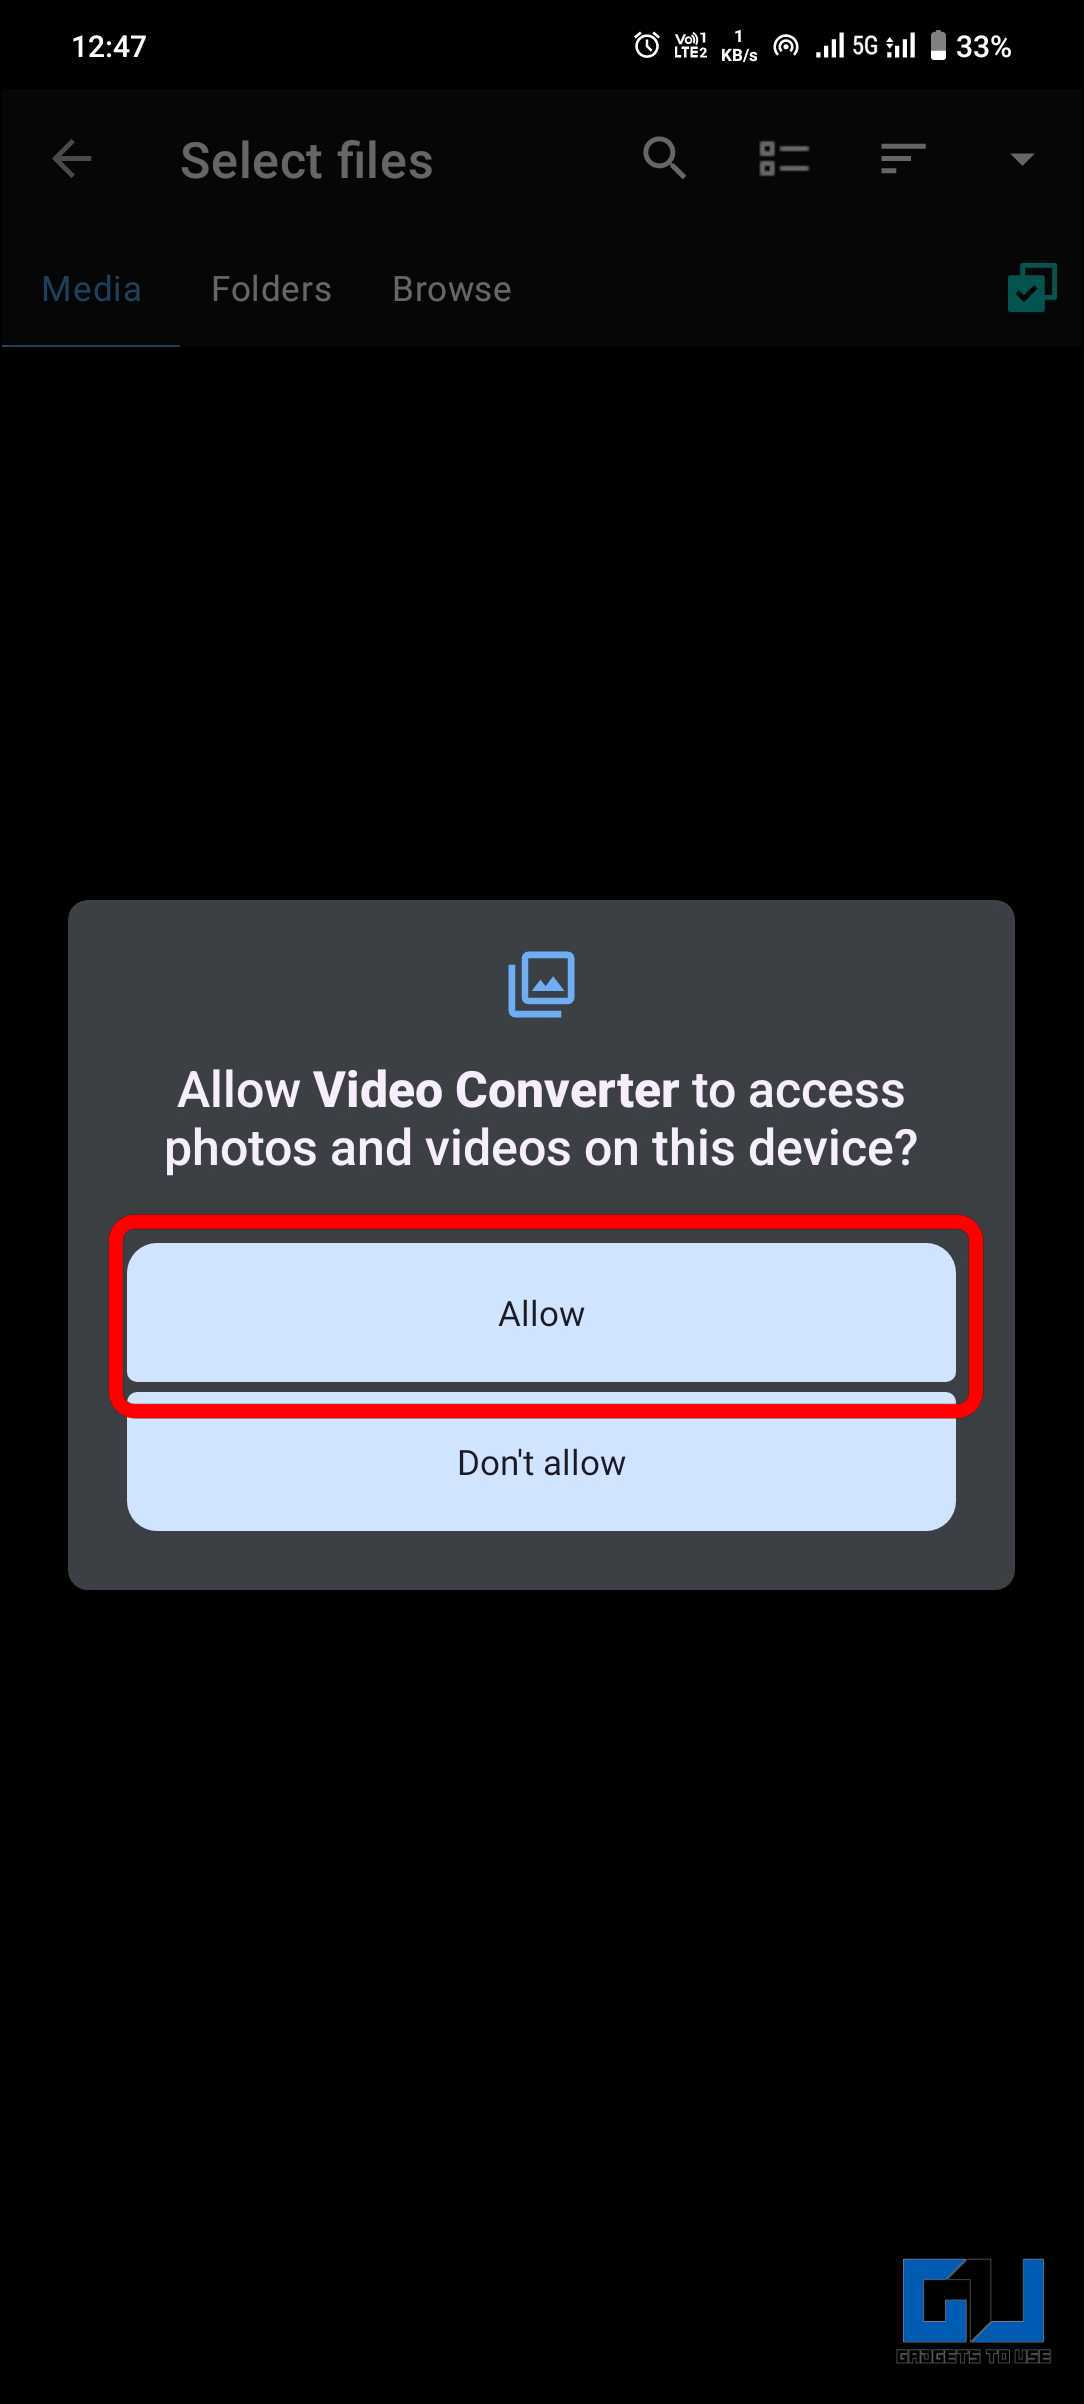 Allow button to grant access to photos